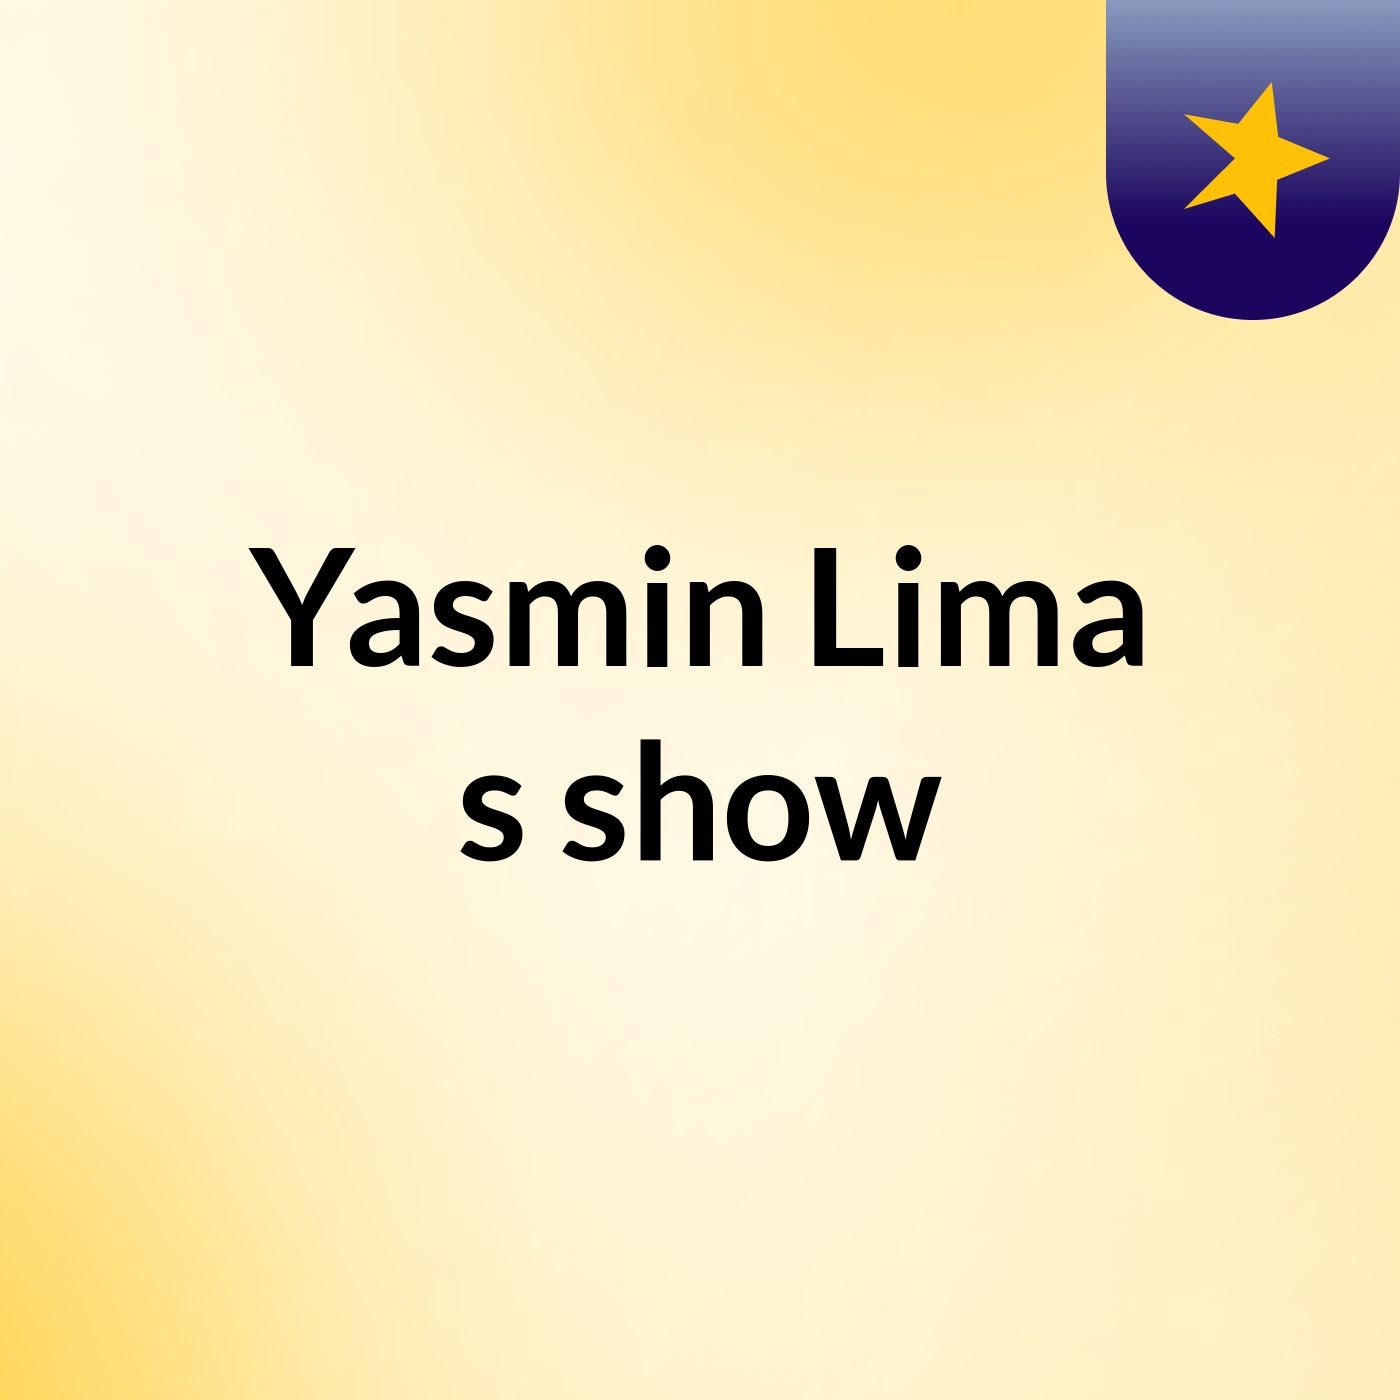 Yasmin Lima's show